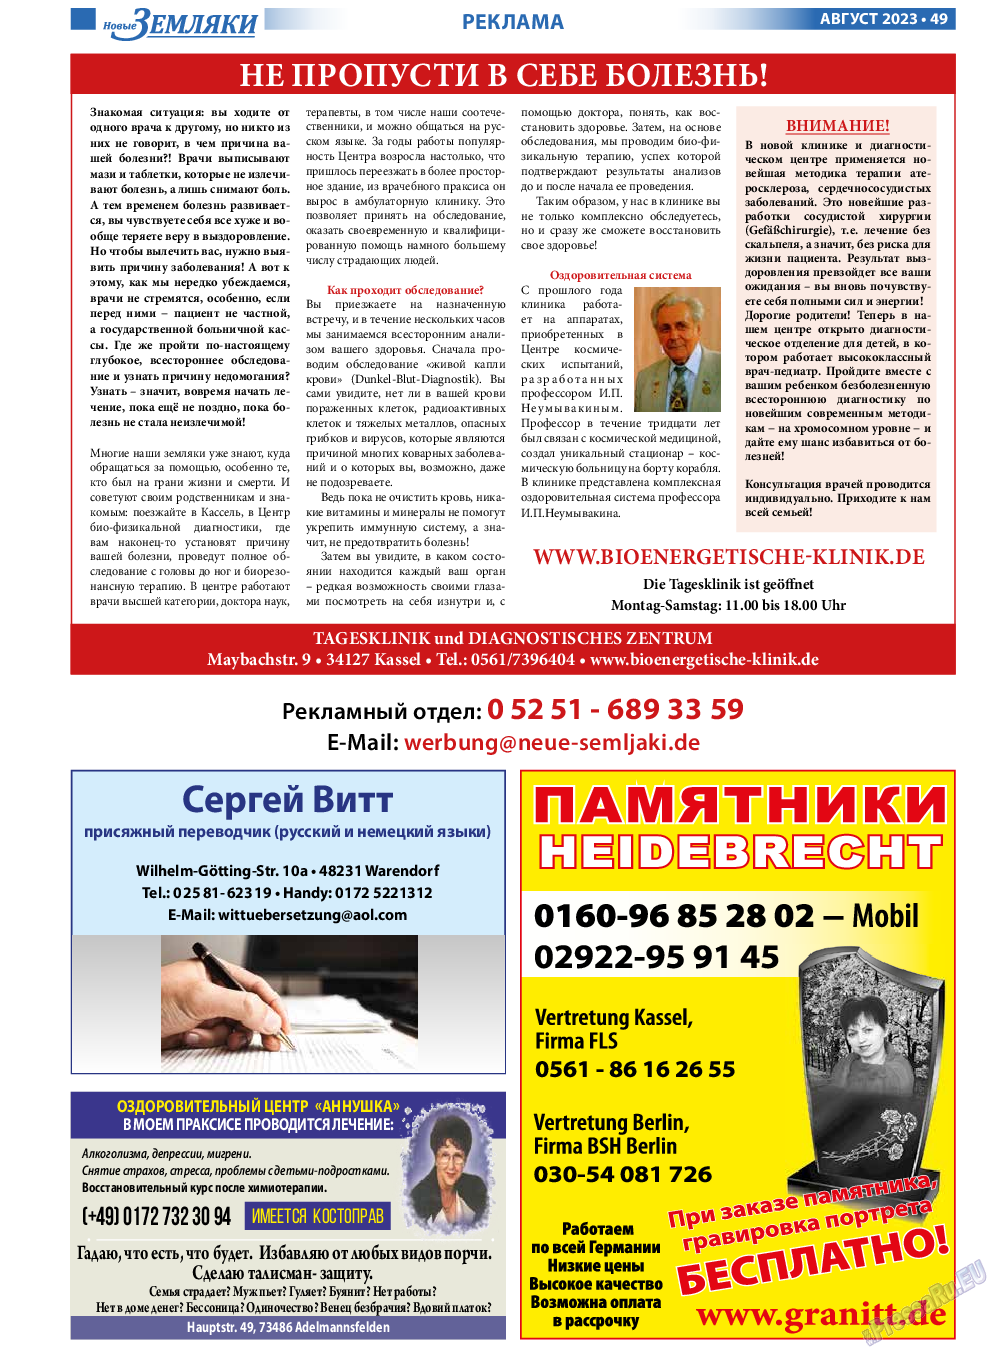 Новые Земляки, газета. 2023 №8 стр.49